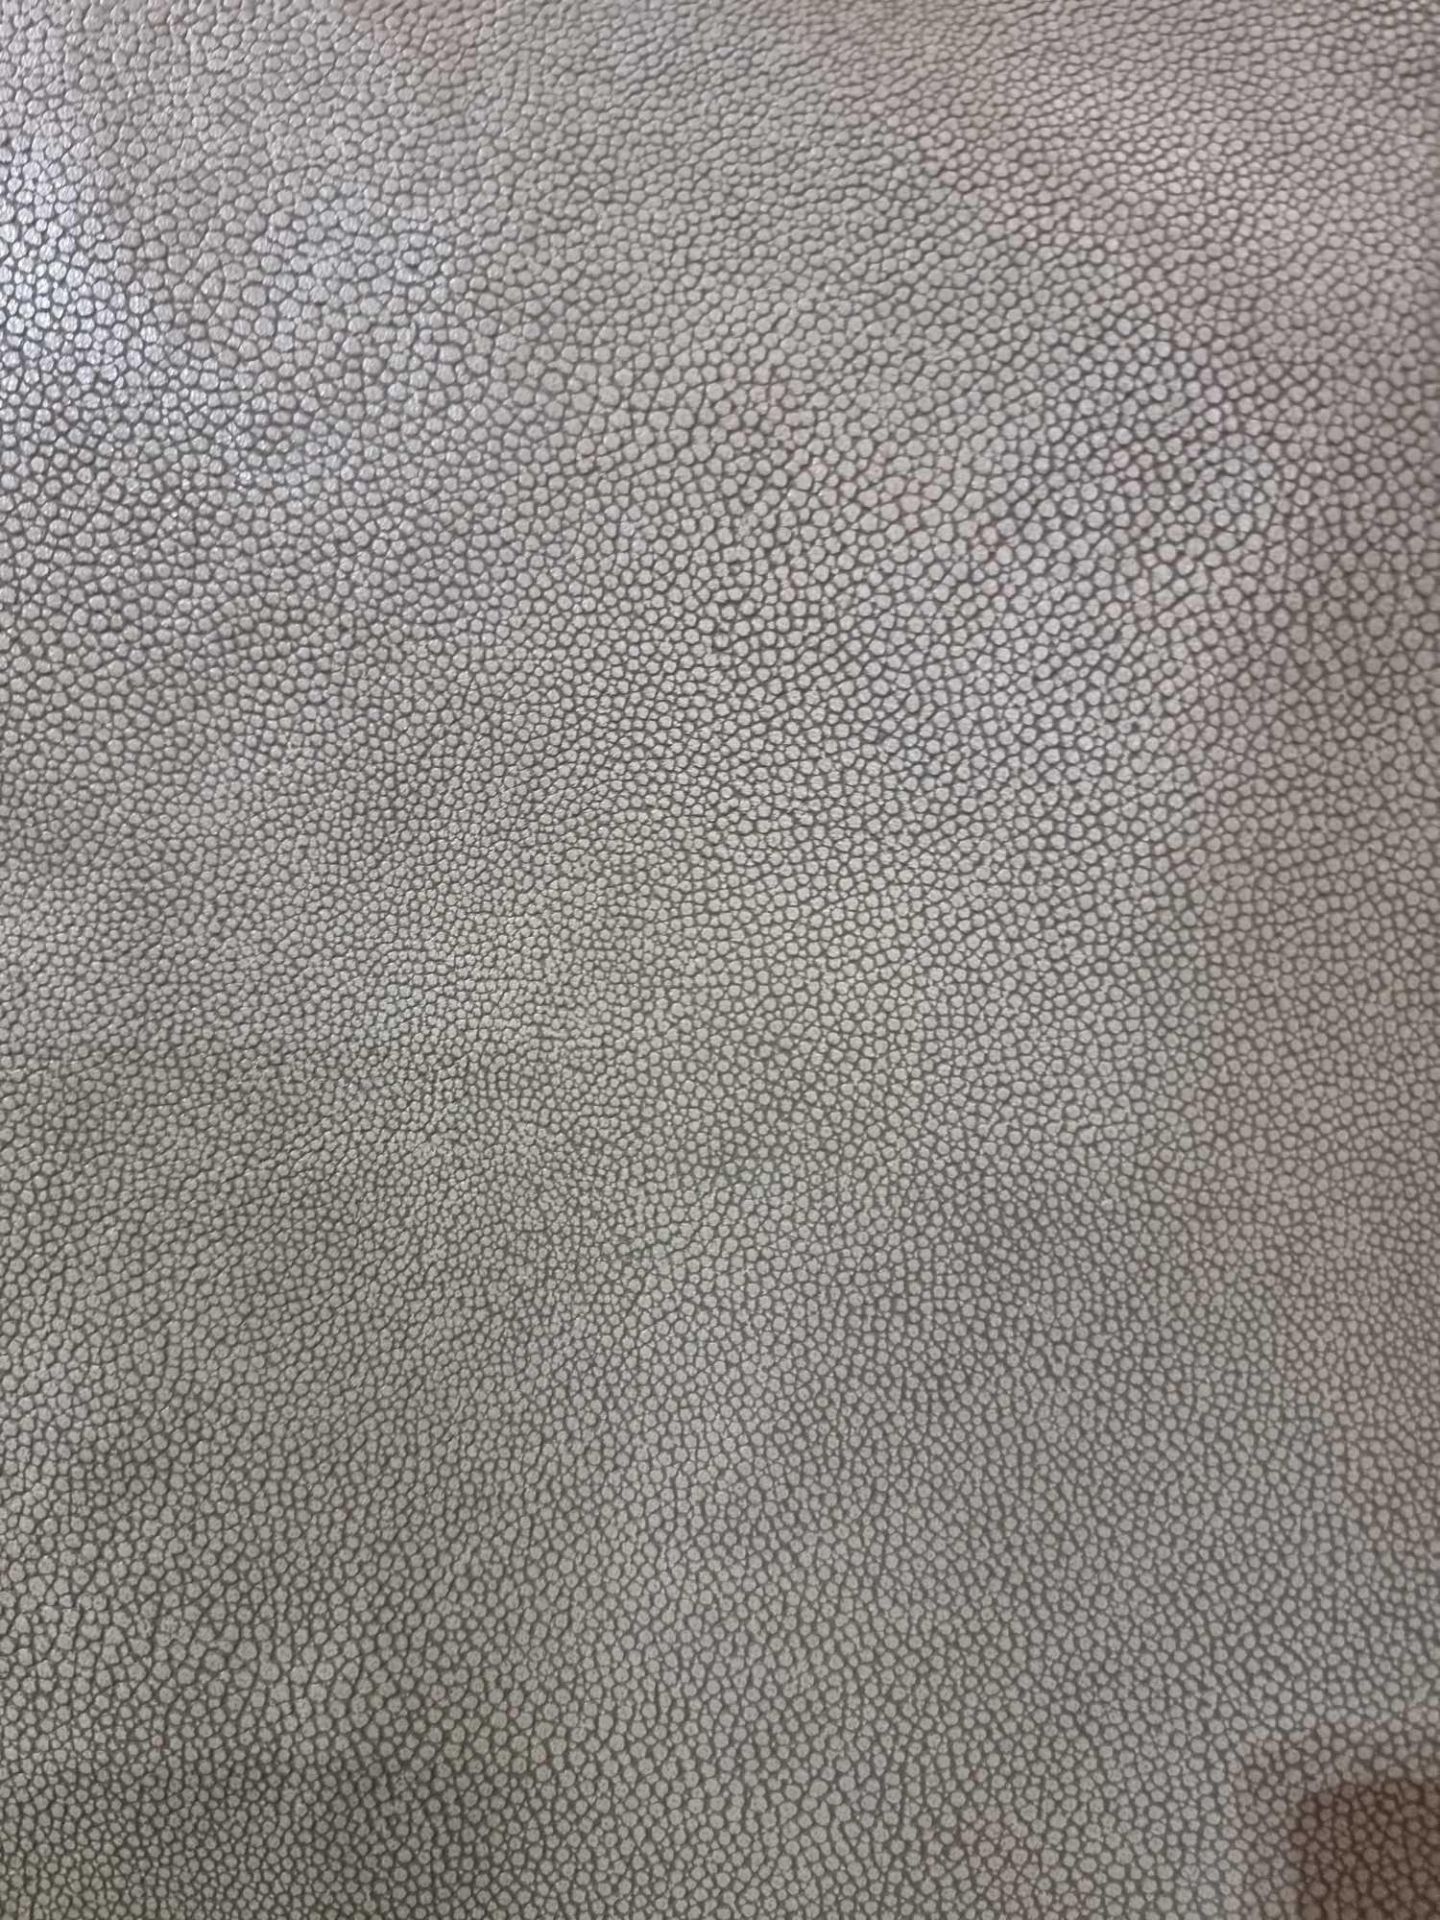 Sage Leather Hide approximately 3.57mÂ² 2.1 x 1.7cm - Bild 2 aus 2